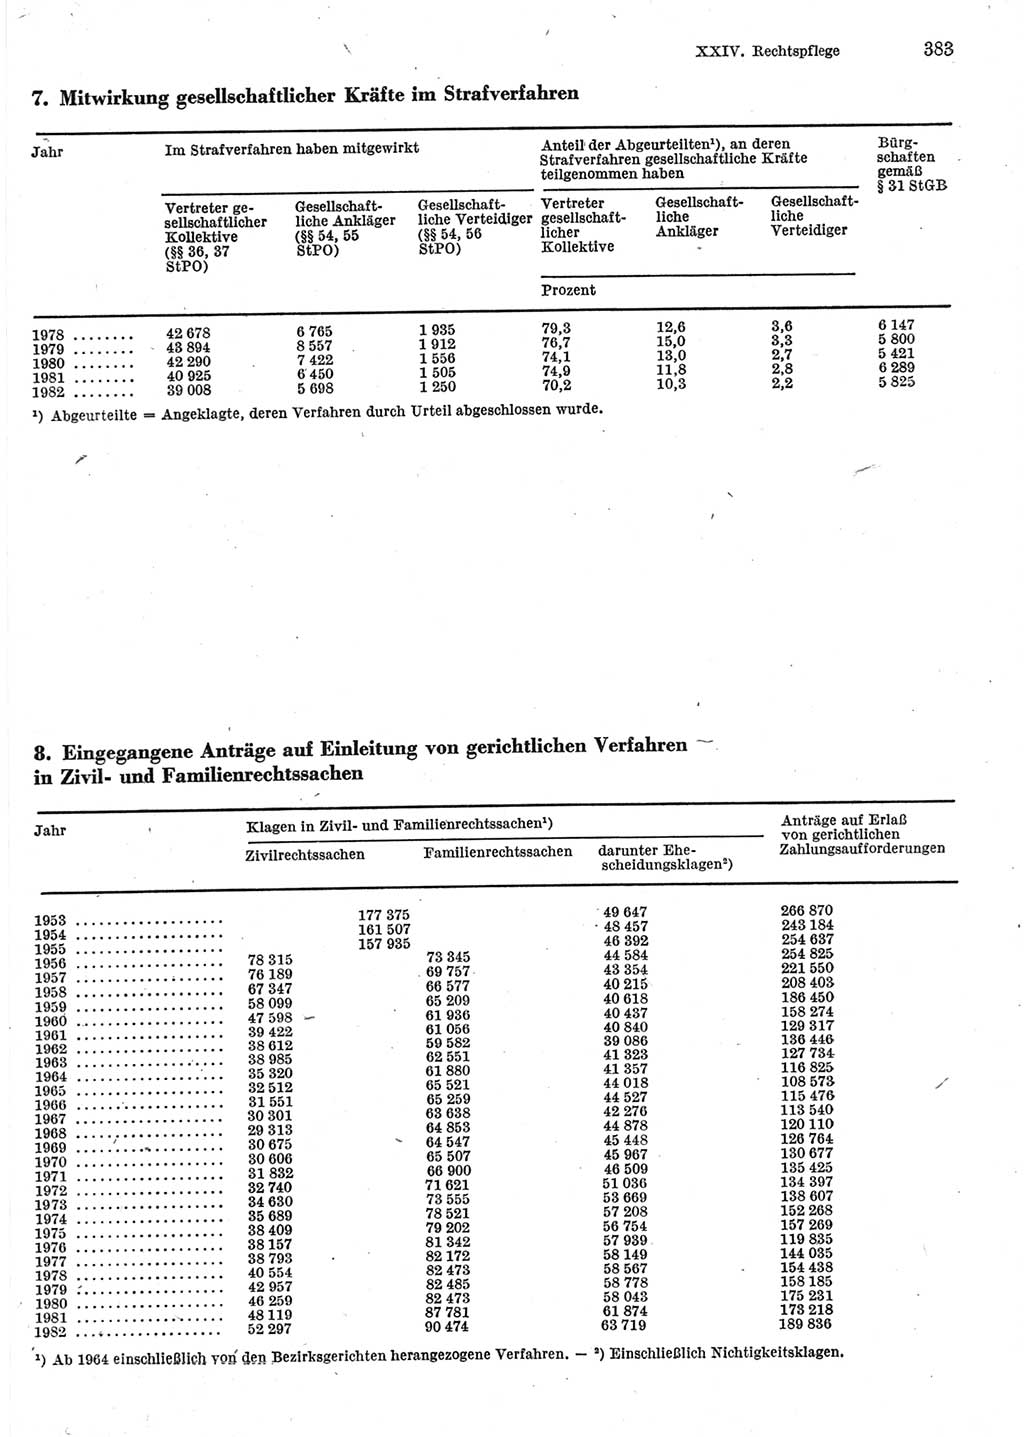 Statistisches Jahrbuch der Deutschen Demokratischen Republik (DDR) 1983, Seite 383 (Stat. Jb. DDR 1983, S. 383)